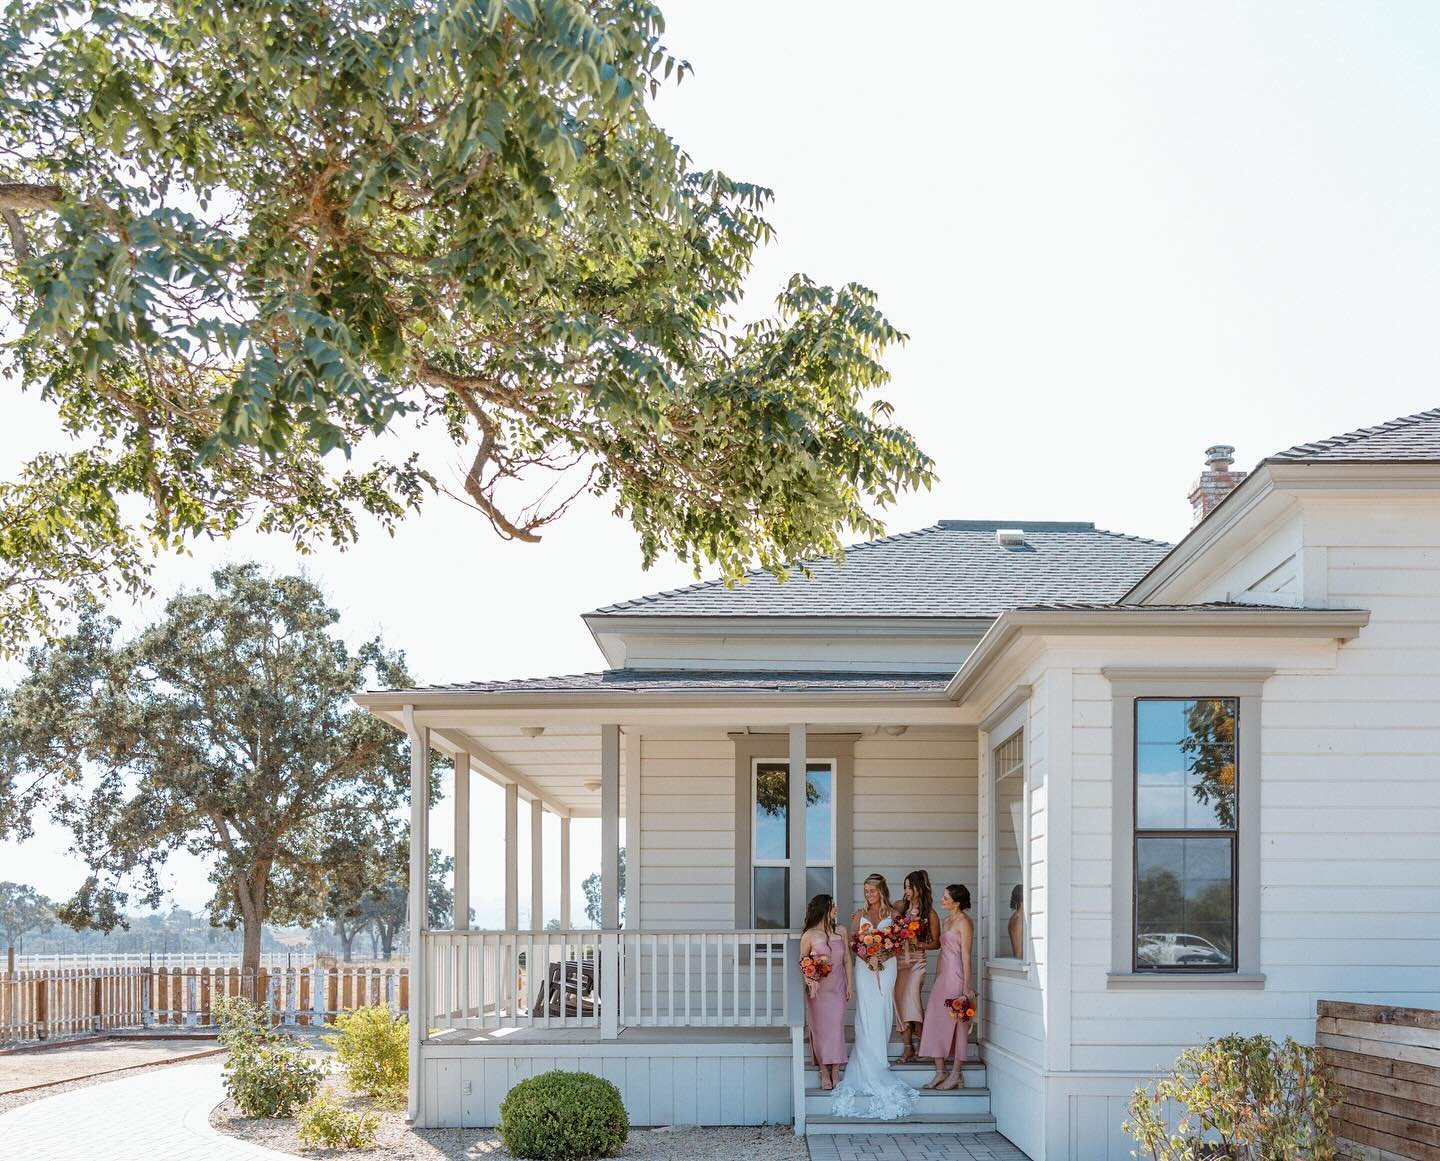 The farmhouse is a wonderful addition to 1800 El Pomar ✨ Make your wedding weekend a full getaway! 

Photographer: @loveyou.nadine 

#vineyardwedding #farmhouse #weekendgetaway #californiaweddings